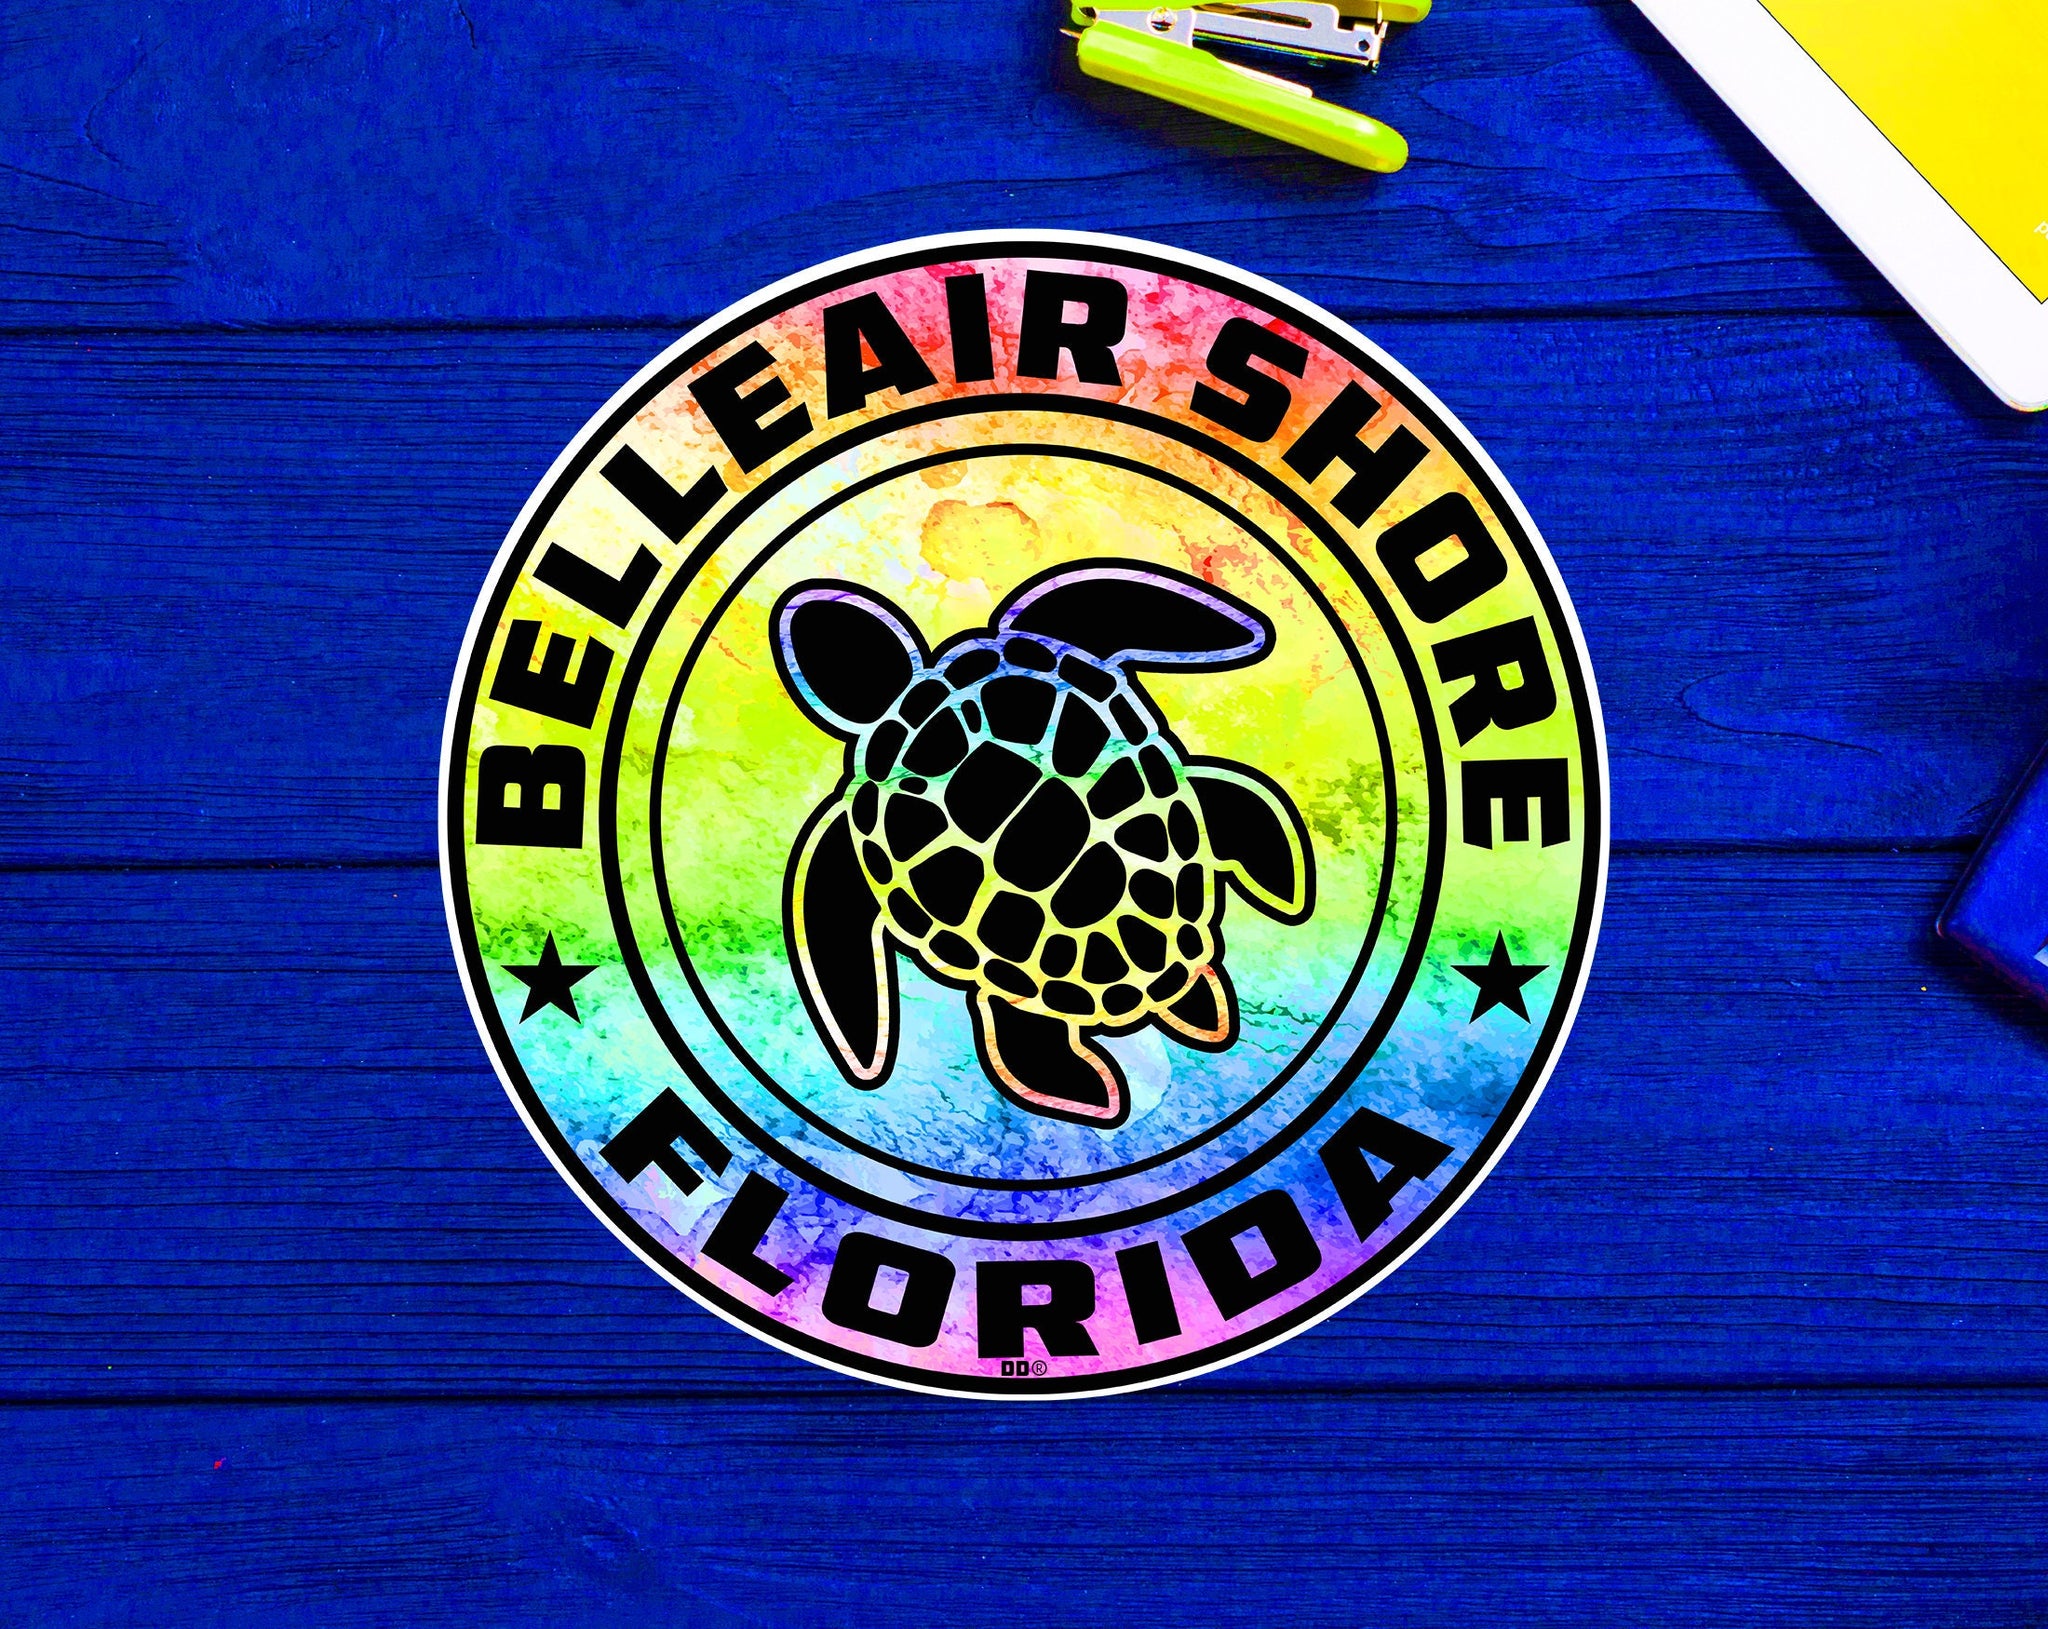 Belleair Shore Florida Beach Sticker Decal 3" Vinyl